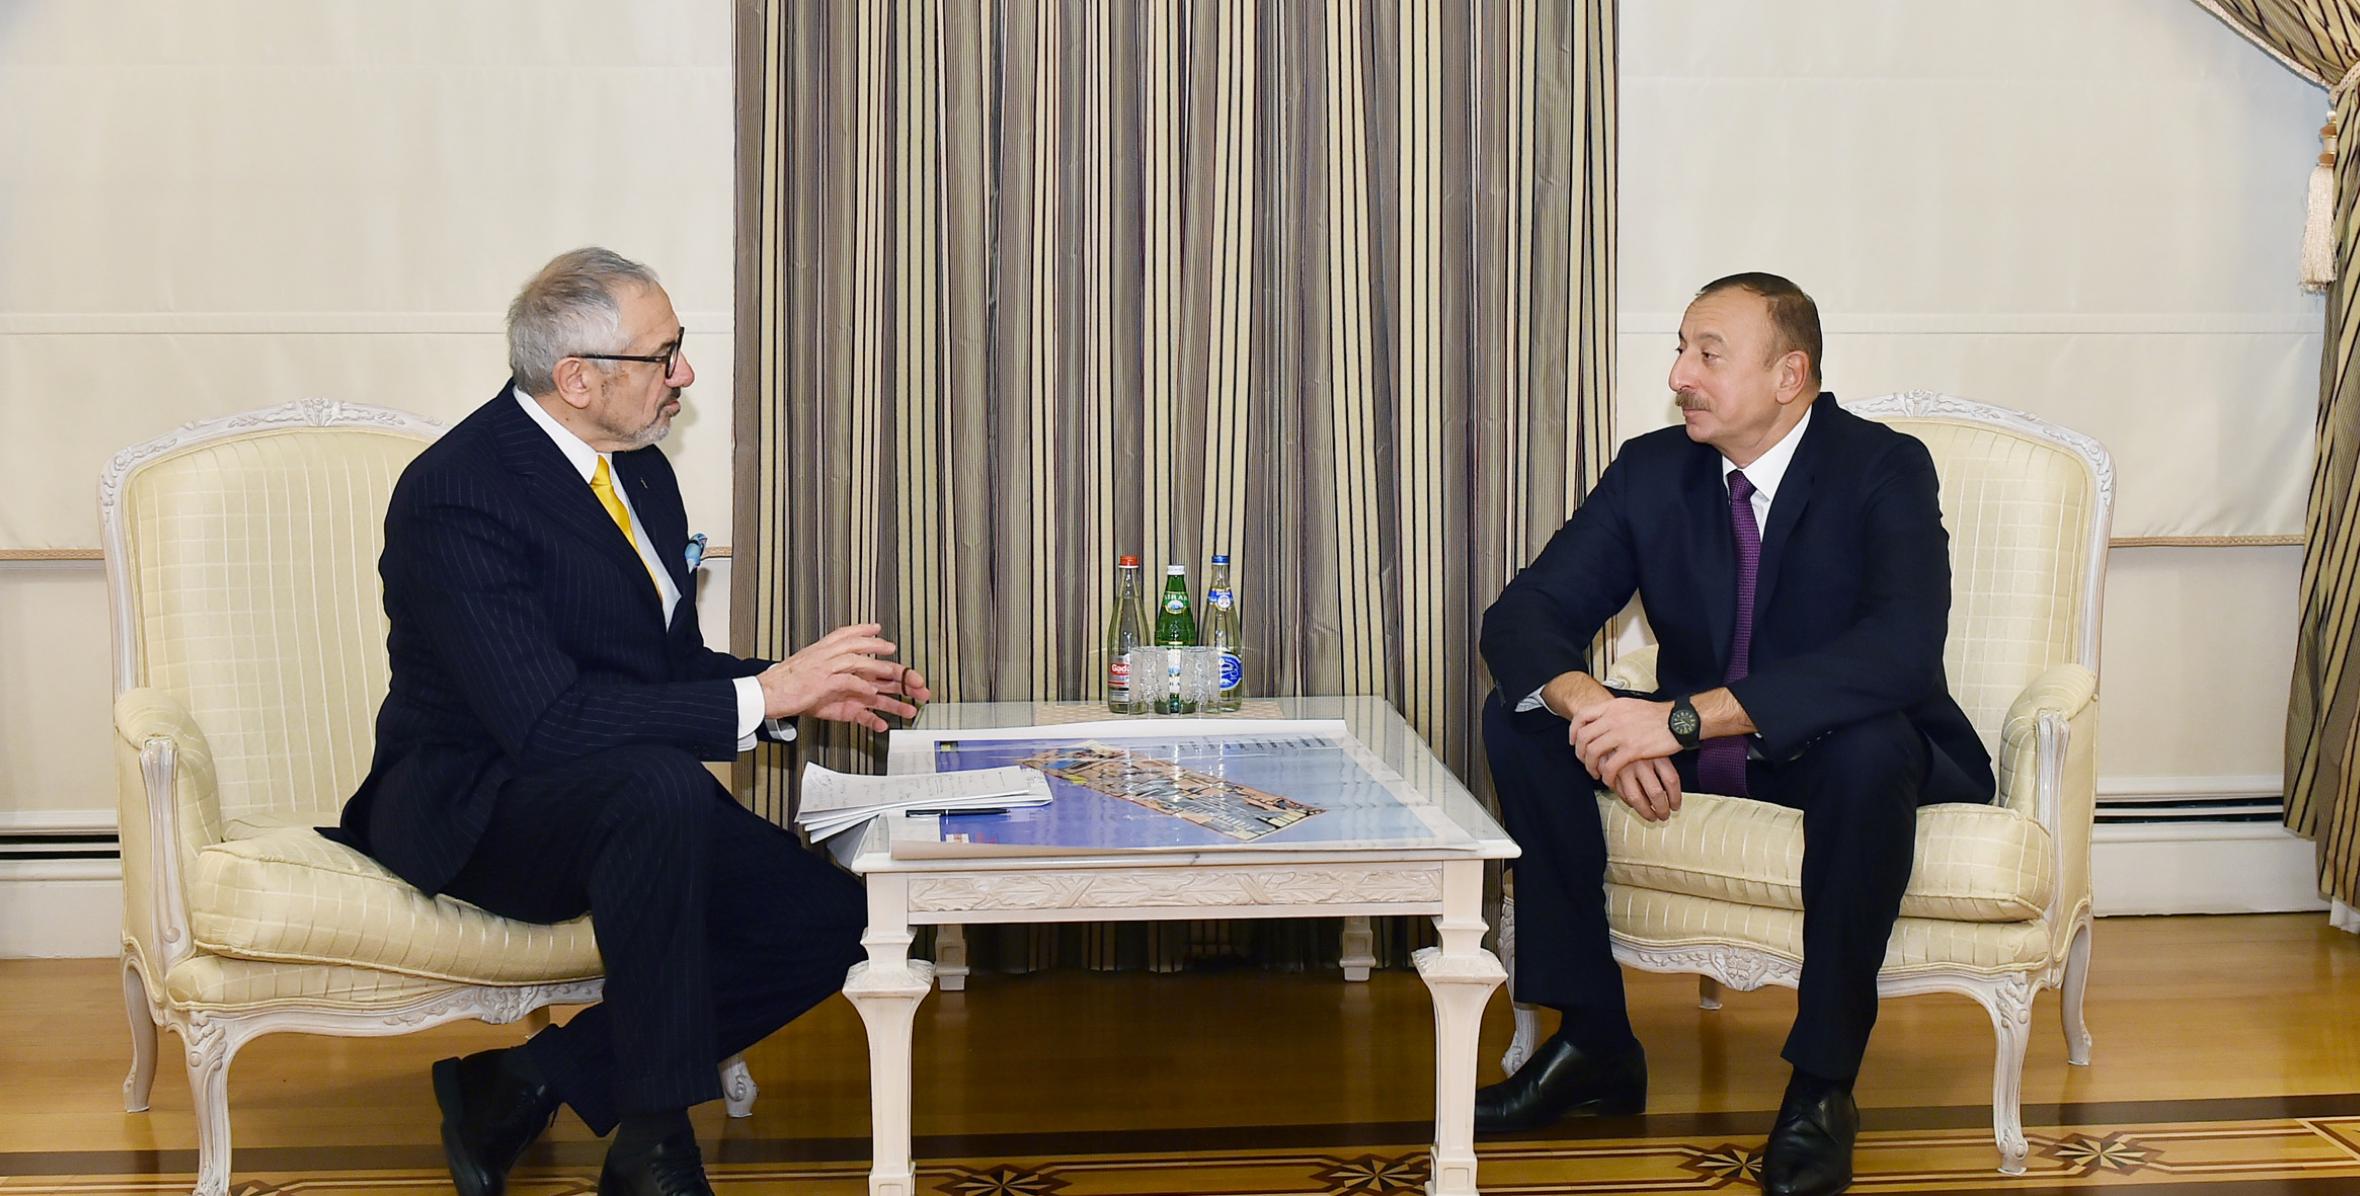 Ильхам Алиев принял руководителя правления компании Danieli & C. Officine Meccaniche S.p.A